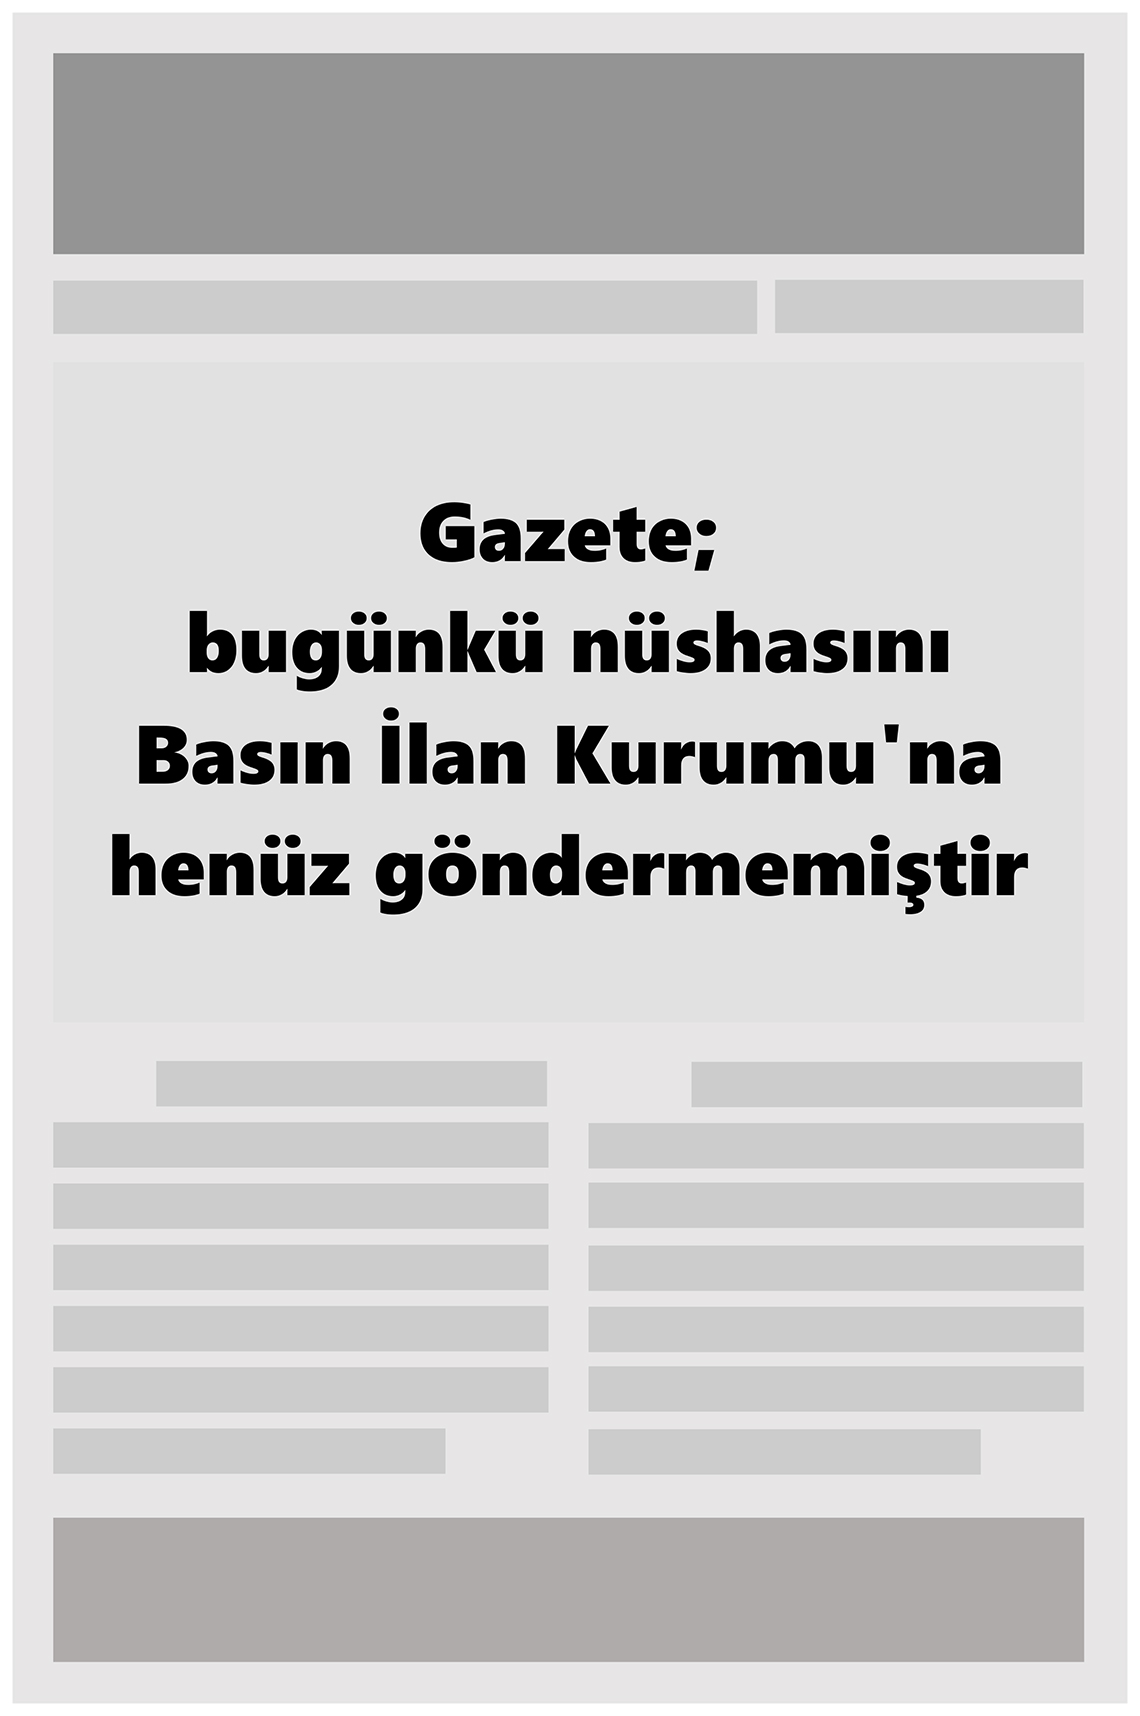 İznik Gazete Manşeti